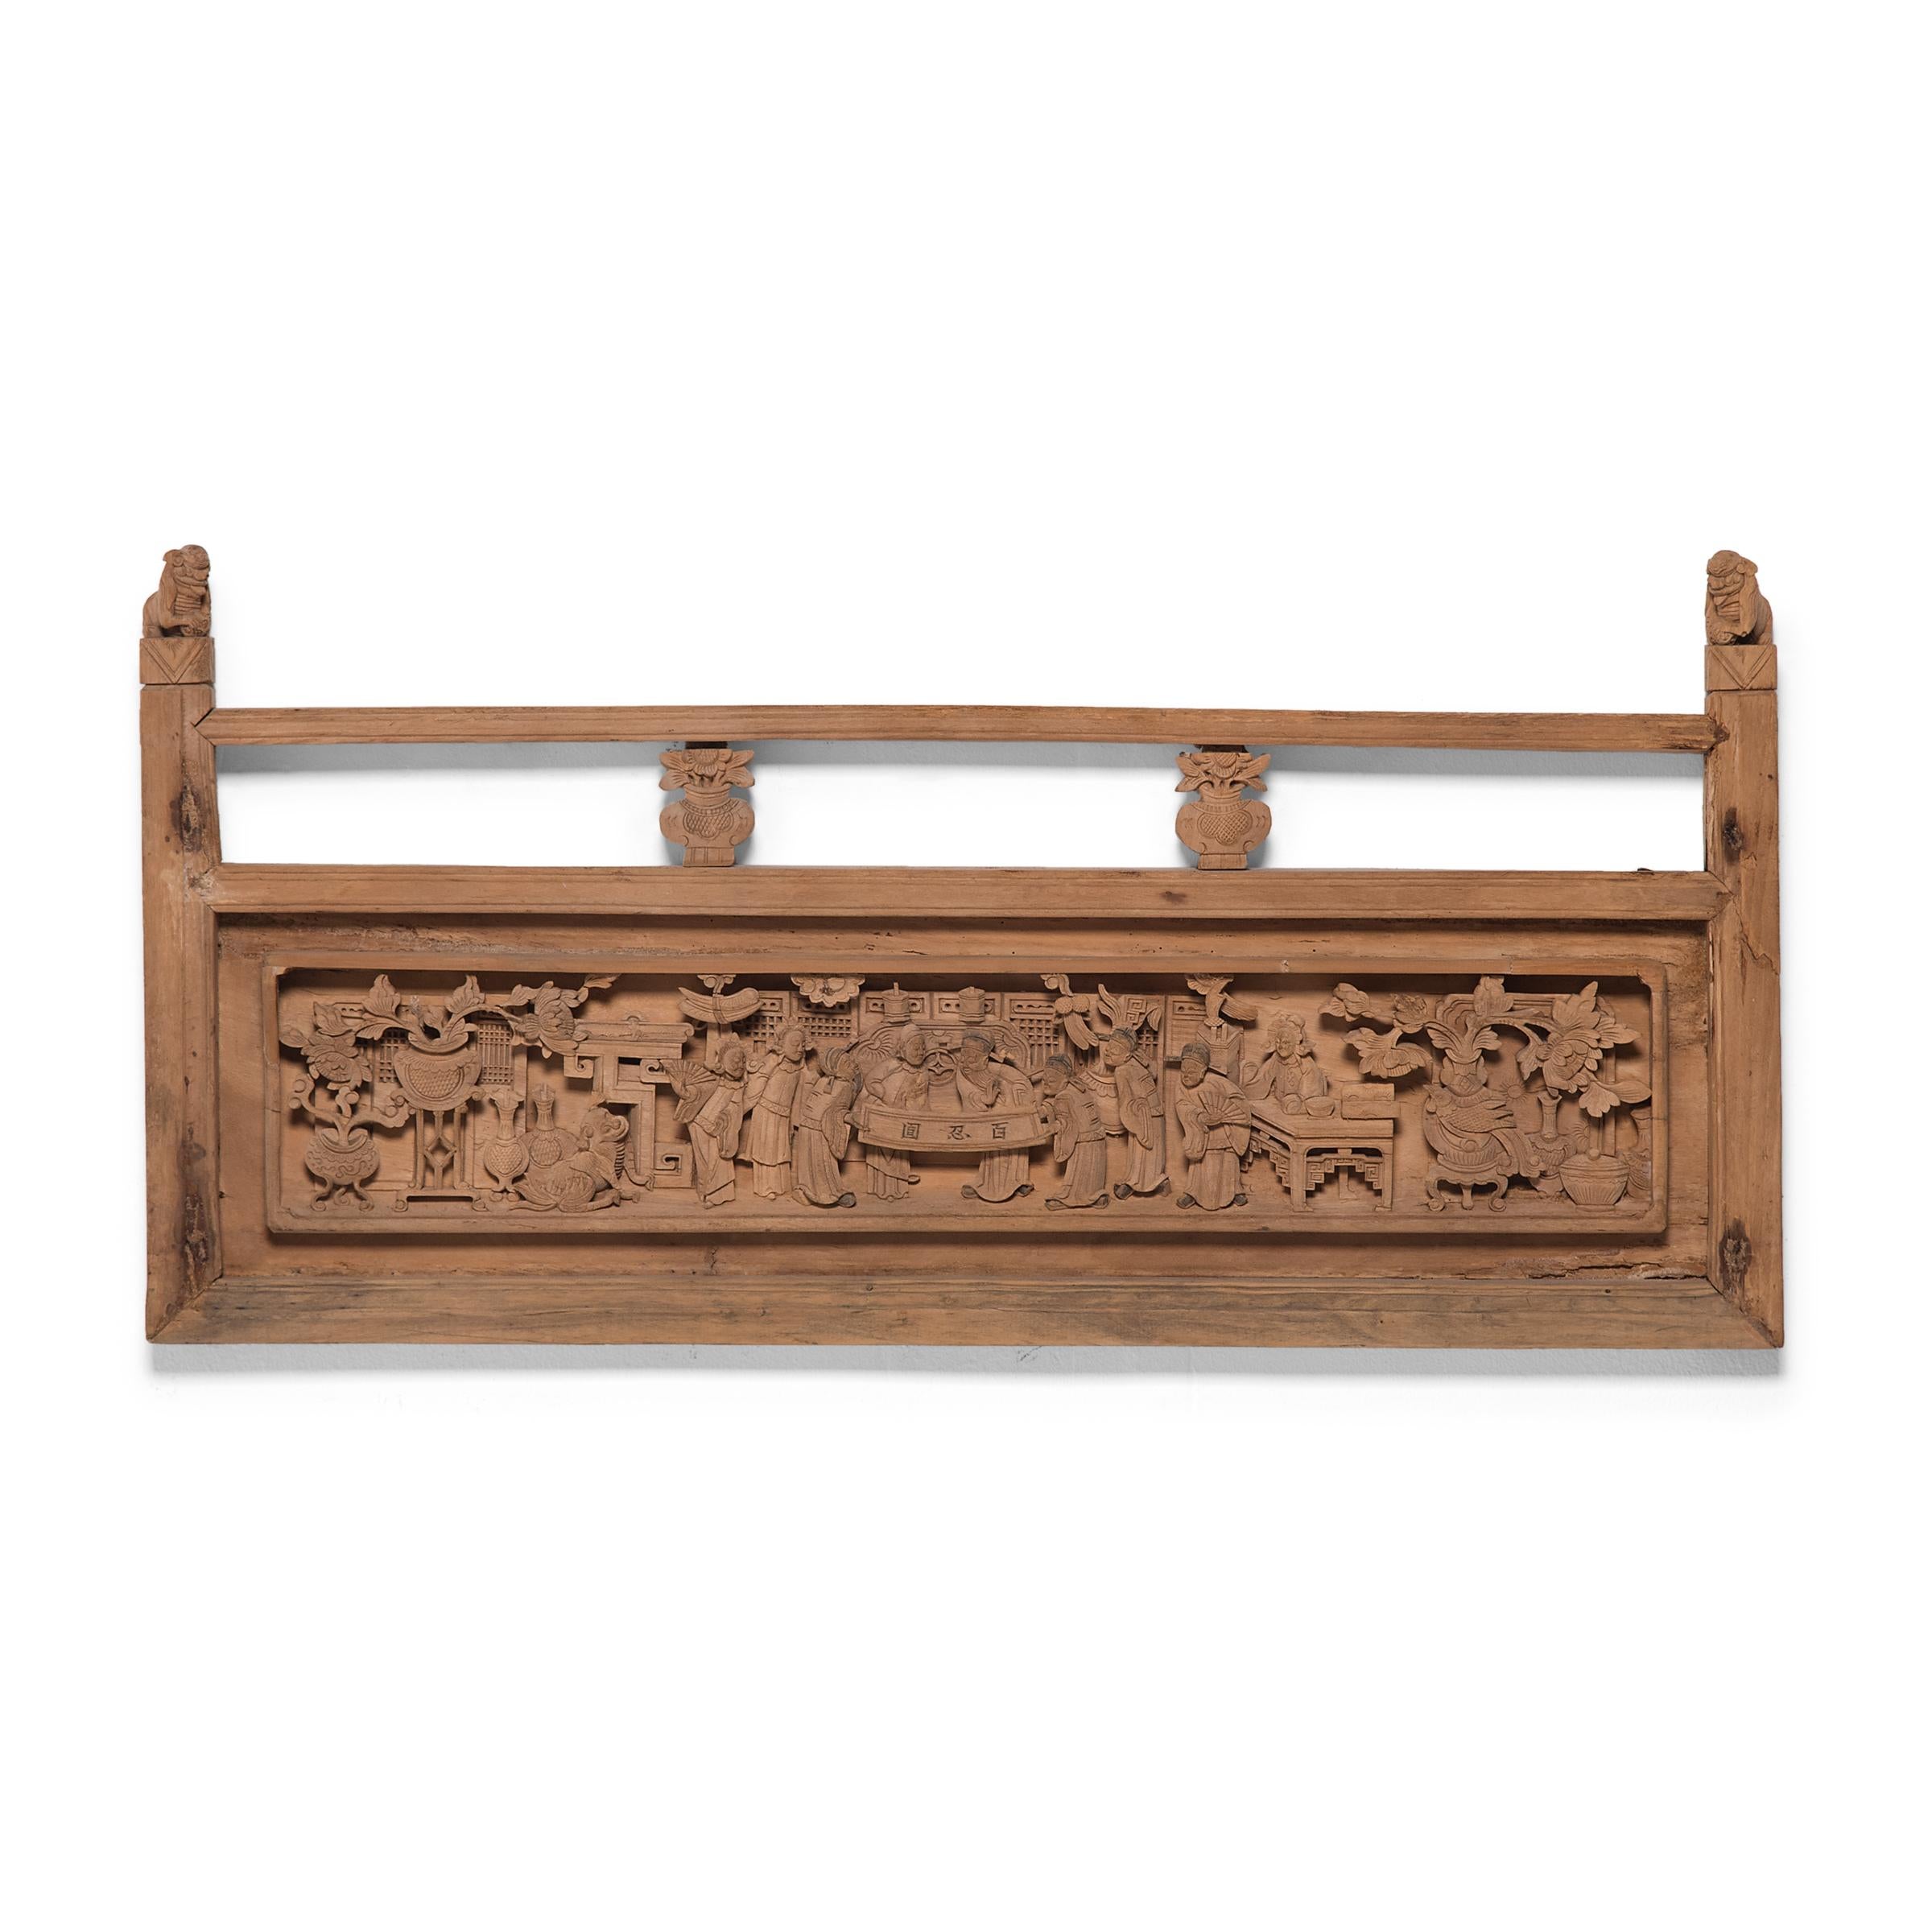 Diese geschnitzten Holzpaneele waren einst Teil des Geländers eines großen Tagesbetts oder Himmelbetts aus der Qing-Dynastie. Die fachmännisch gefertigte Tafel zeigt eine schöne Reliefschnitzerei mit komplizierten Details verschiedener gewandeter